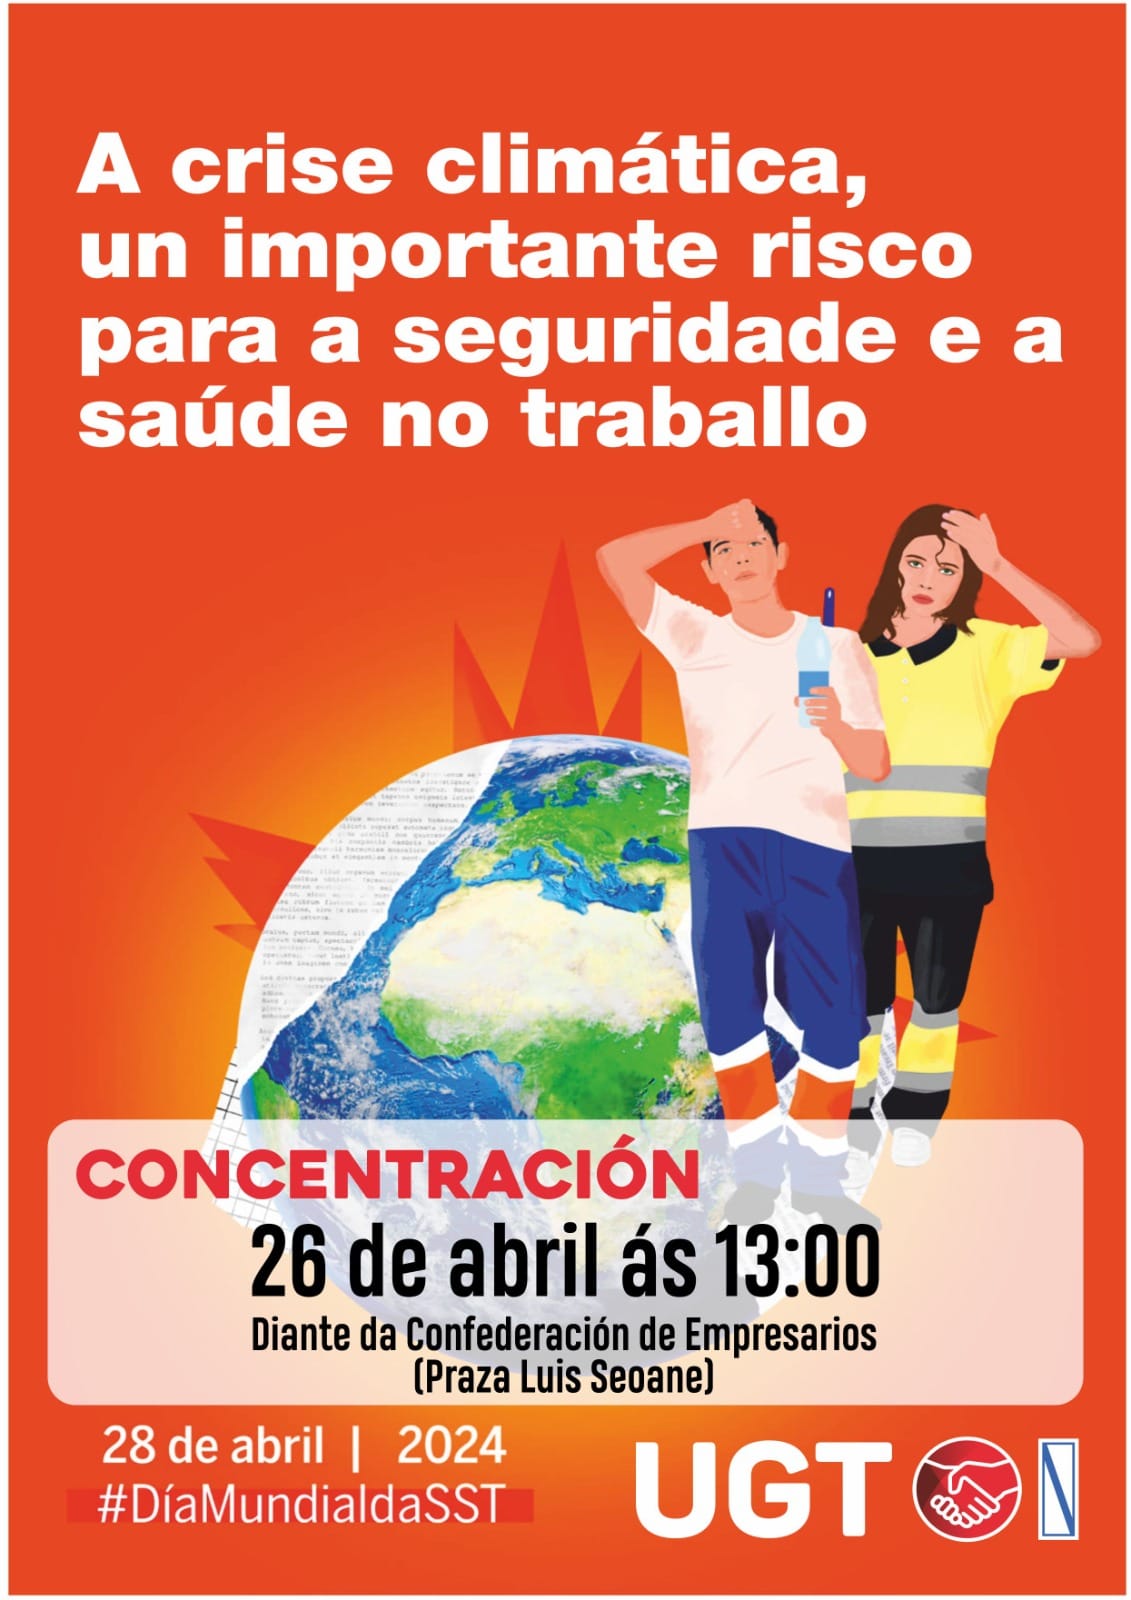 Cartaz da concentración, día 26 de abril ás 13:00 diante da Confederación de Empresarios na Praza Luis Seoane. A imaxe é a mesma da publicación da entrada